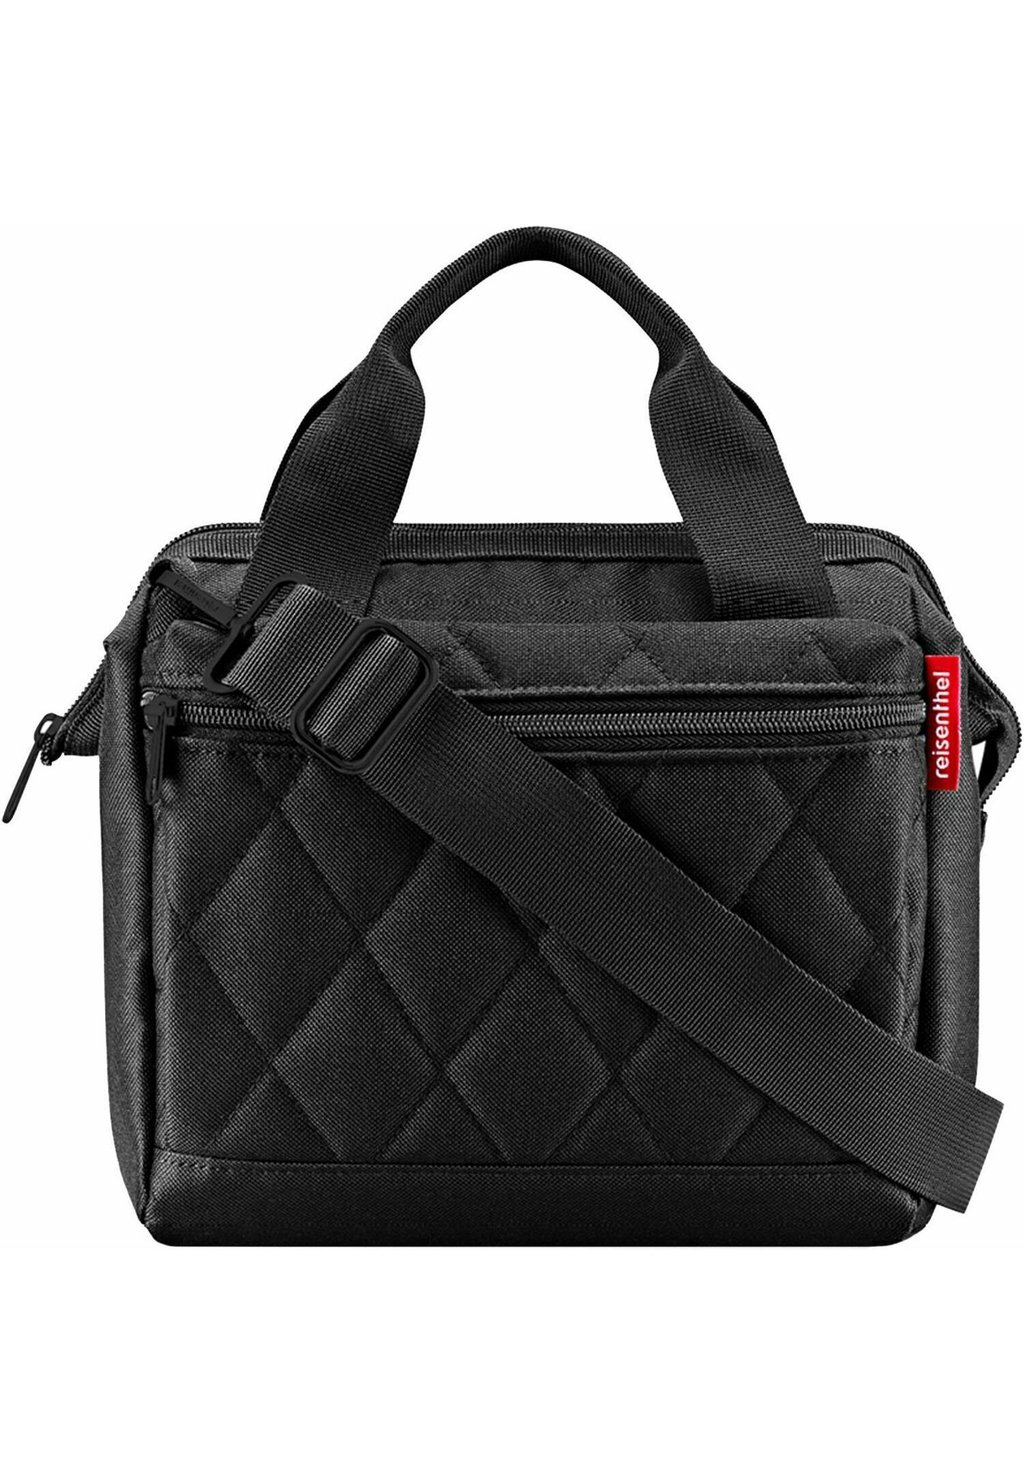 Сумка ALLROUNDER 22 CM Reisenthel, цвет rhombus black сумки для мамы reisenthel сумка allrounder m zebra